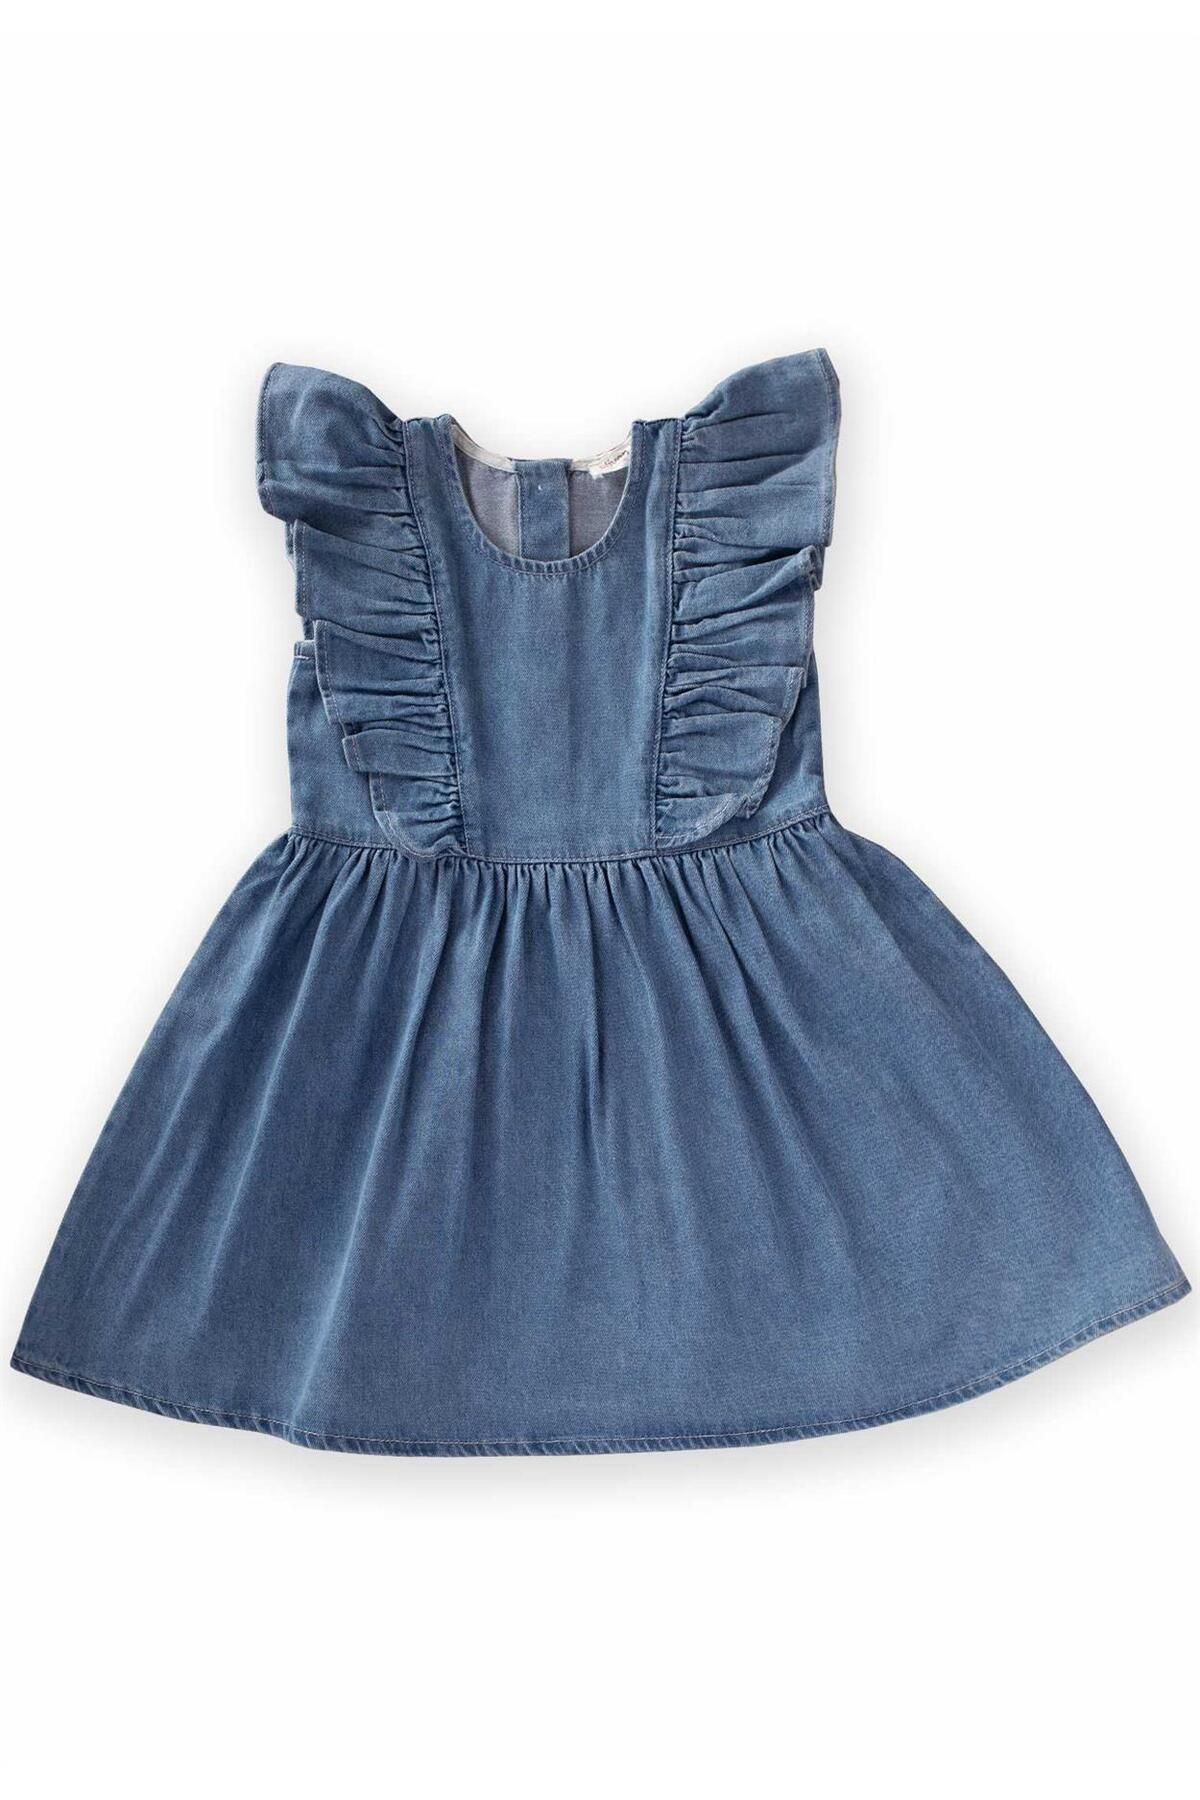 Cigit Omuzdan Fırfırlı Kot Elbise 2-7 Yaş Mavi